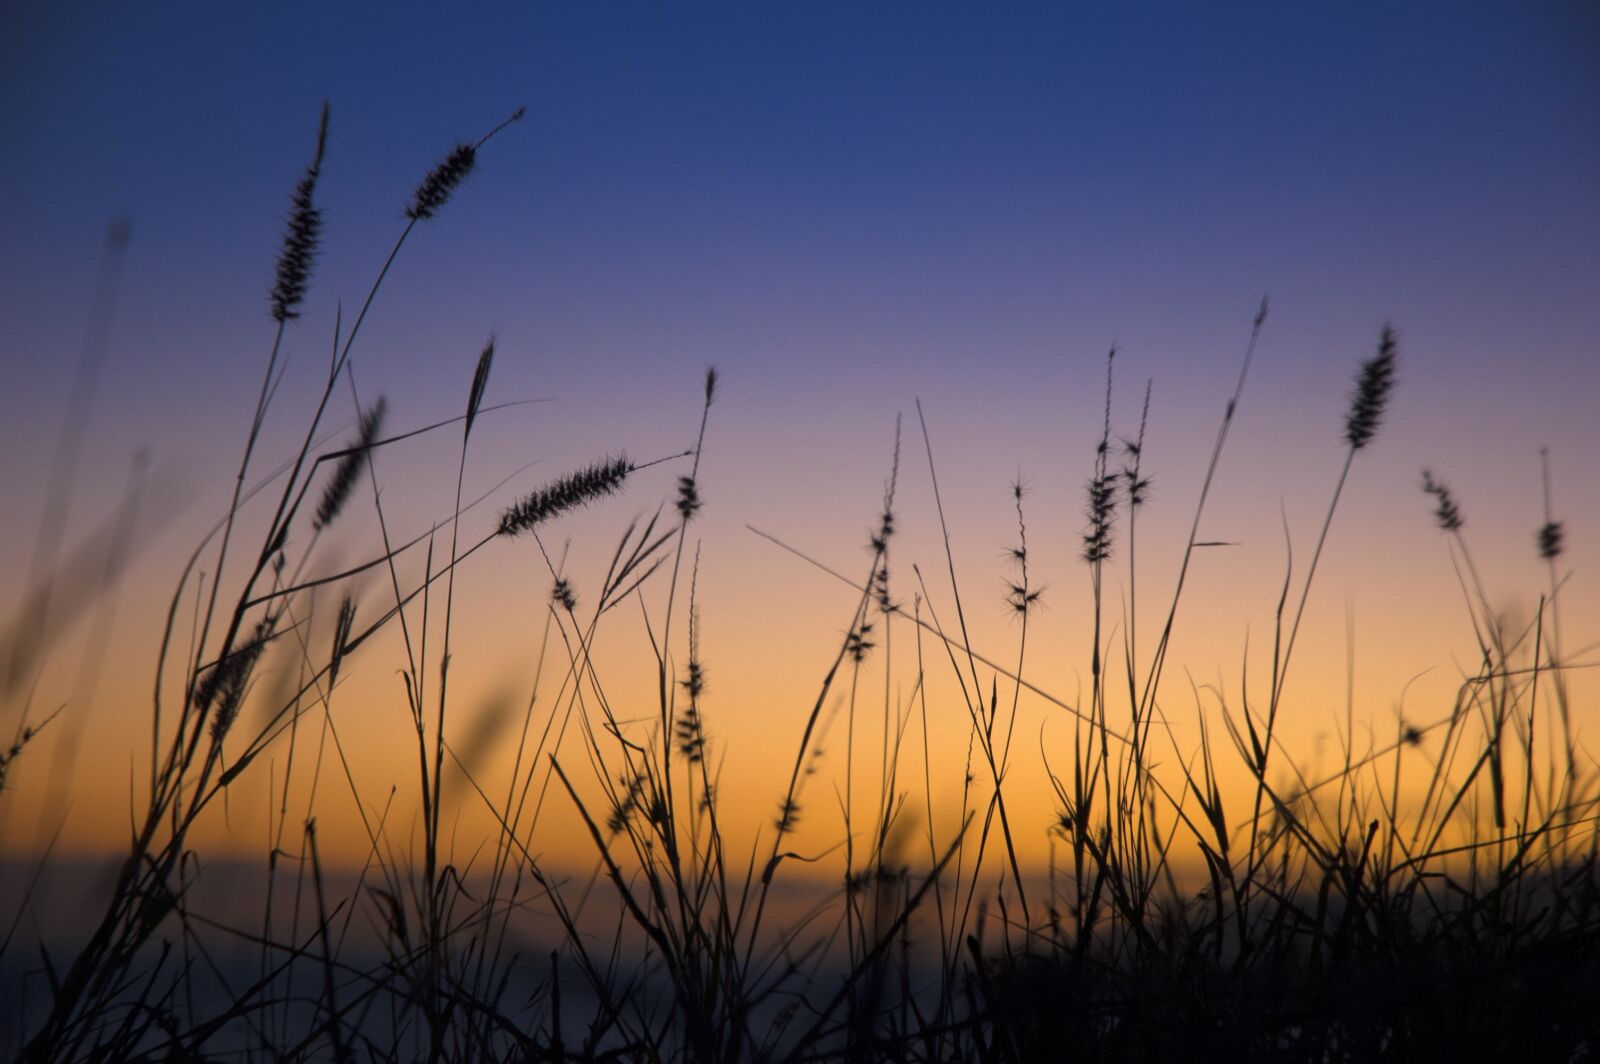 Nikon D70s sample photo. Sunset, sky, landscape photography